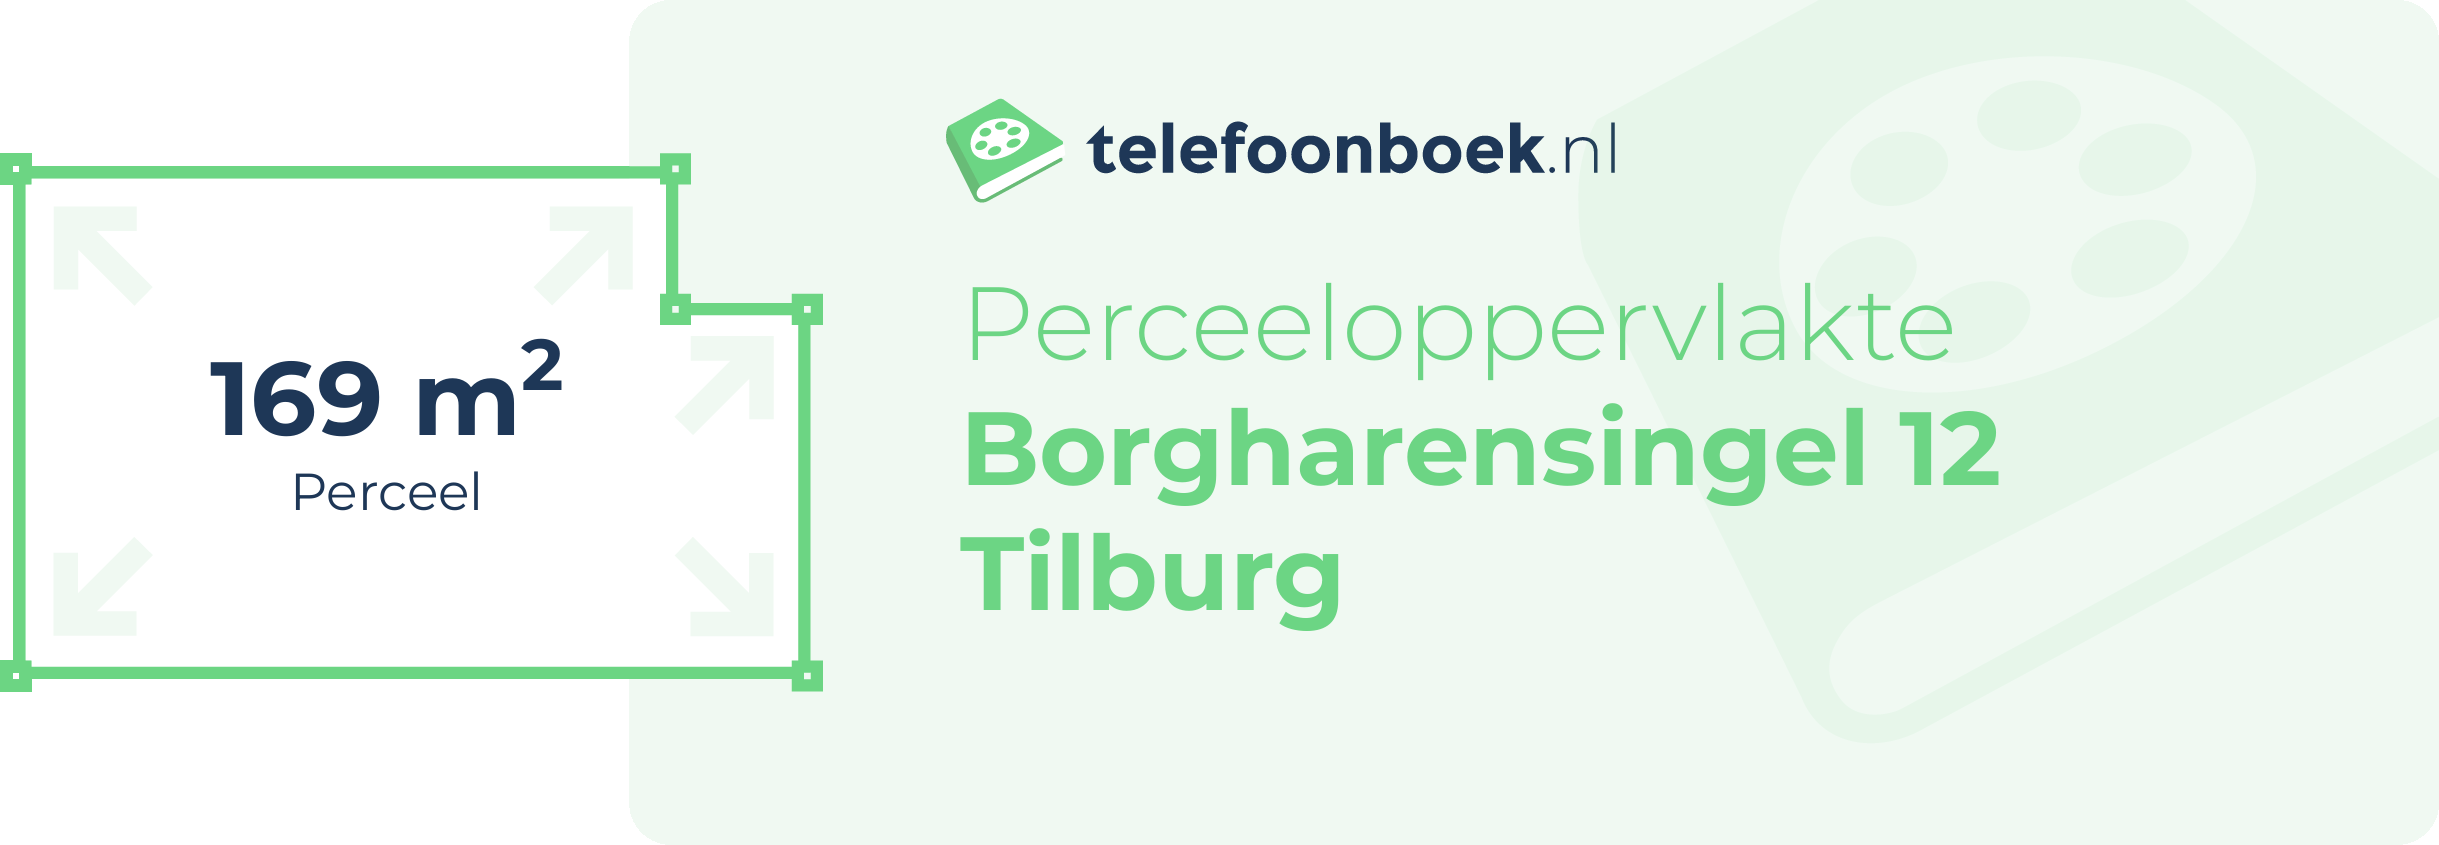 Perceeloppervlakte Borgharensingel 12 Tilburg